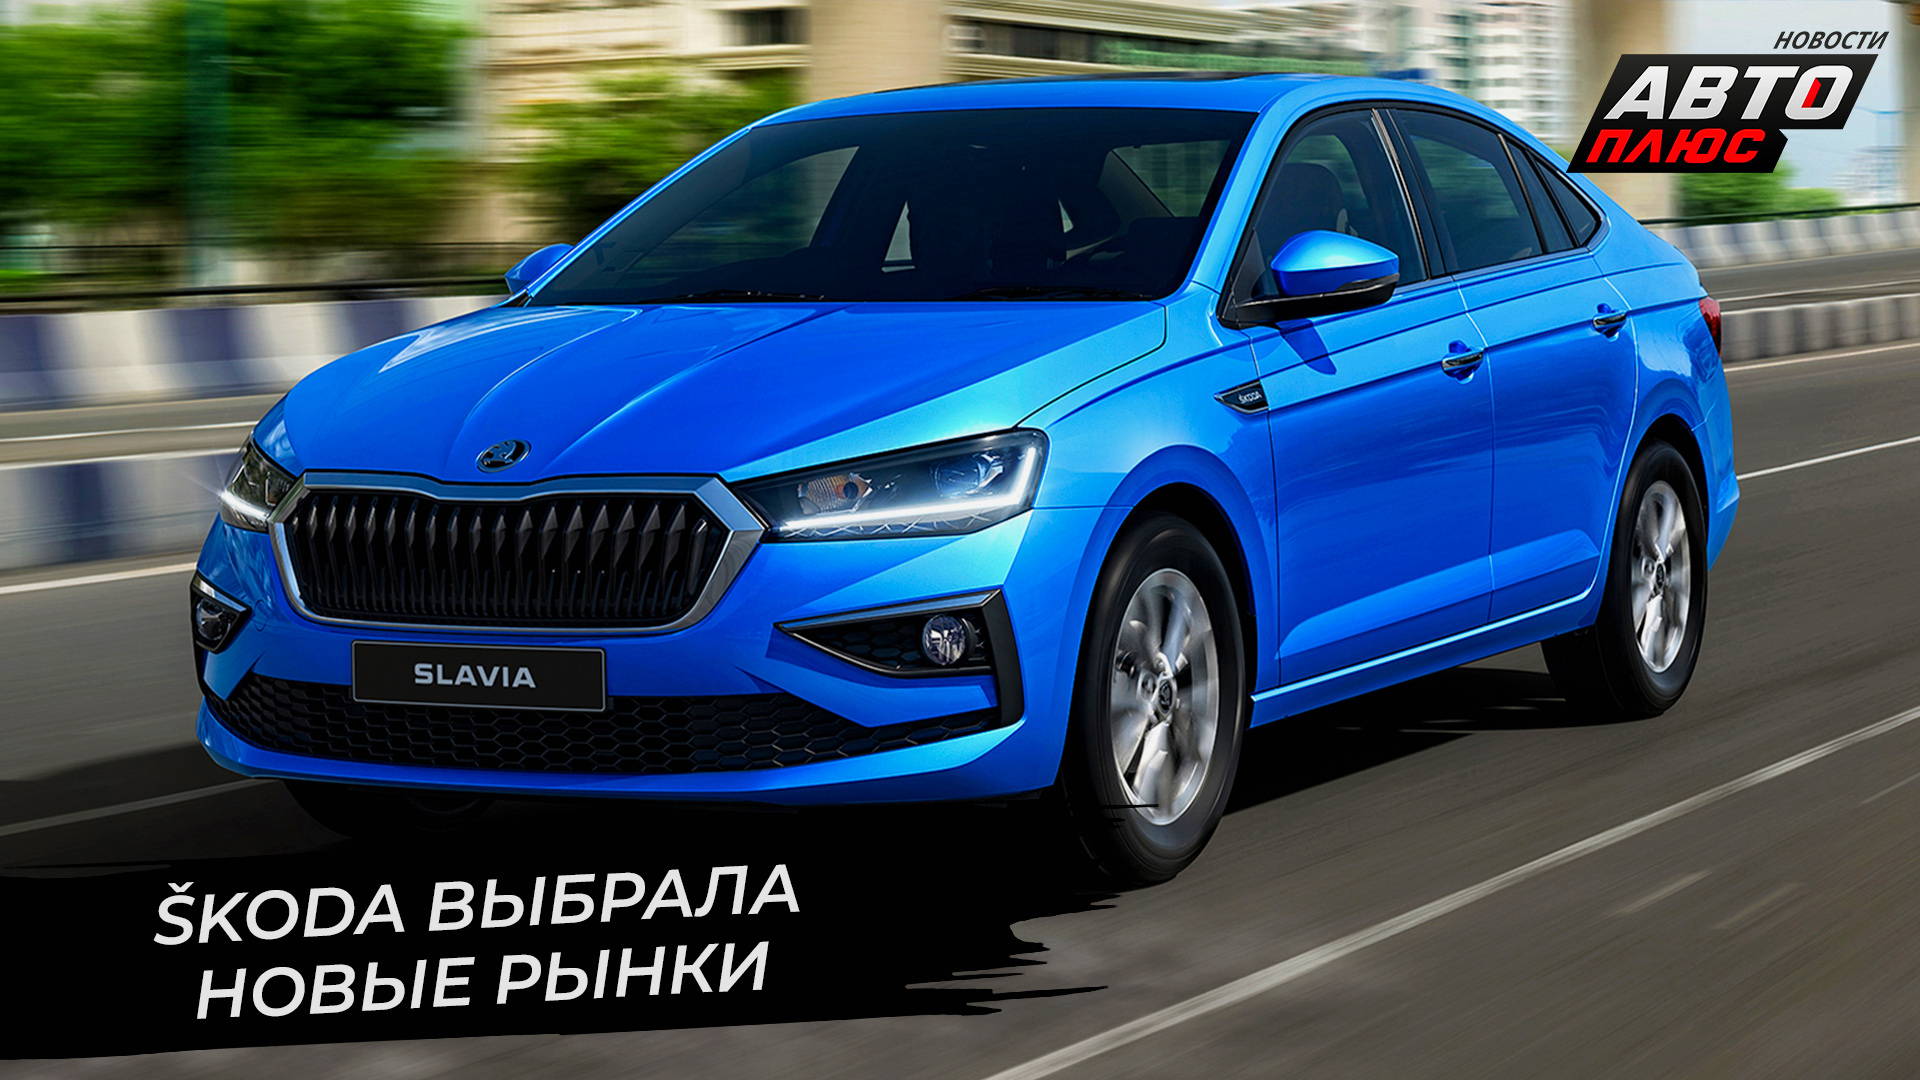 Škoda выбрала новые рынки | Новости с колёс №2676